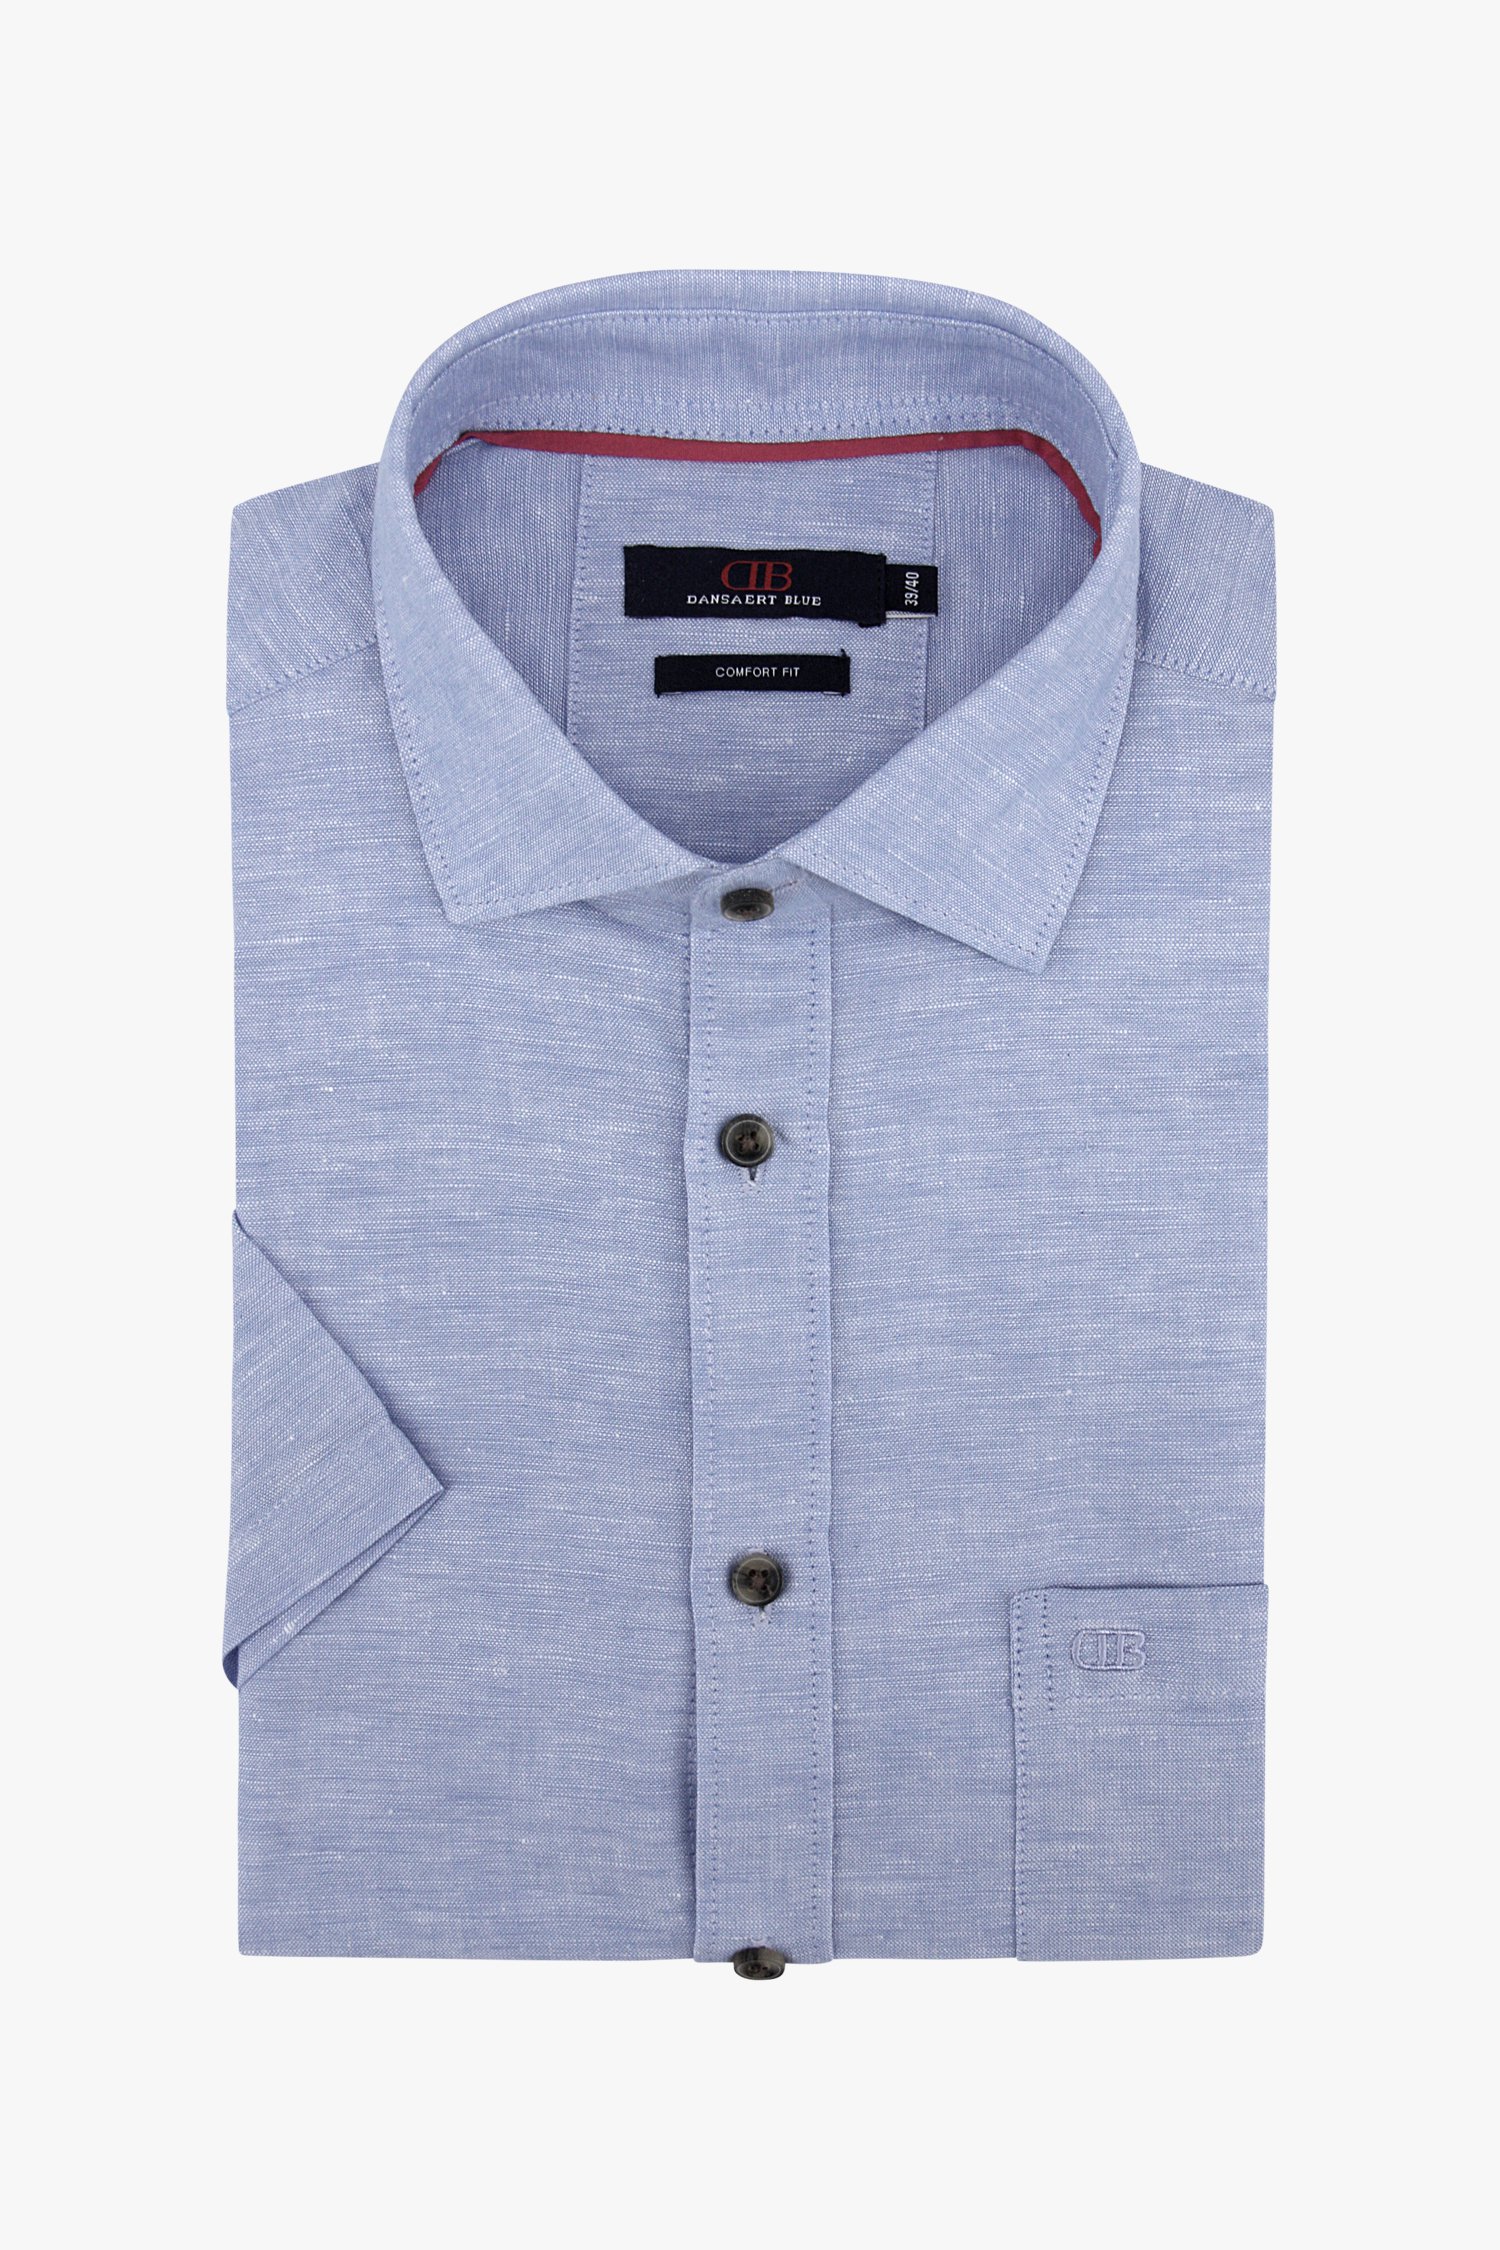 Lichtblauw hemd met linnen-look - comfort fit van Dansaert Blue voor Heren